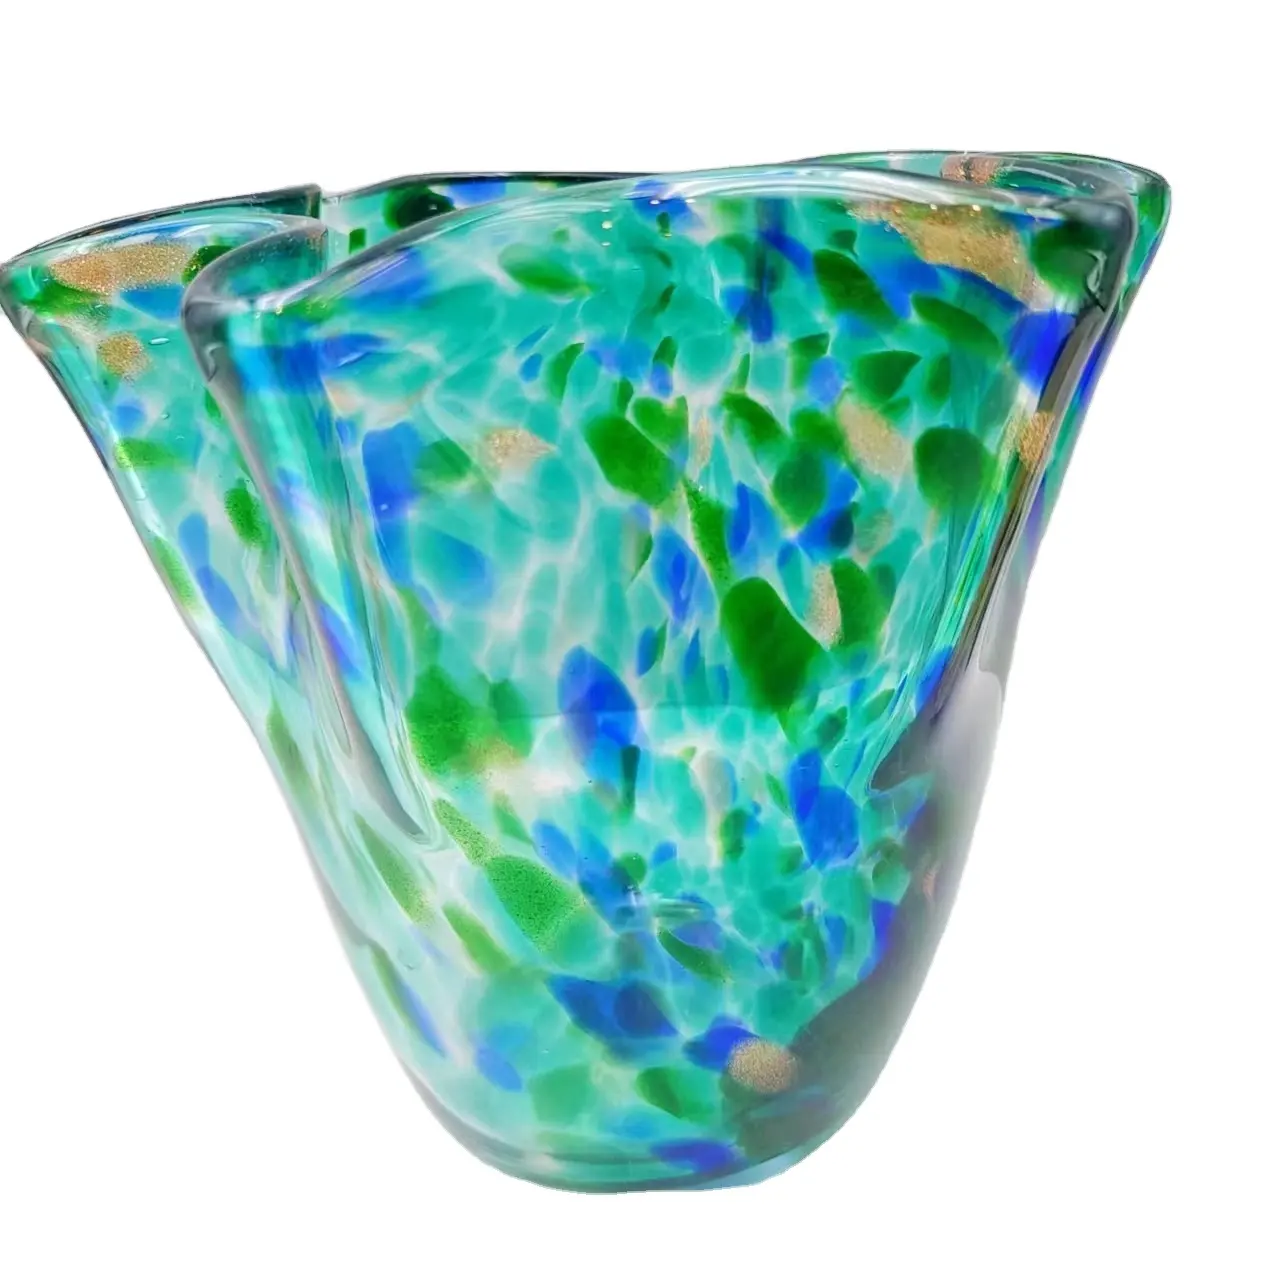 Kase ev ofis masa dekor mavi yeşil cam vazo tasarım tatil hediye vermek el yapımı Murano cam hızlı kargo yeni avrupa MJ